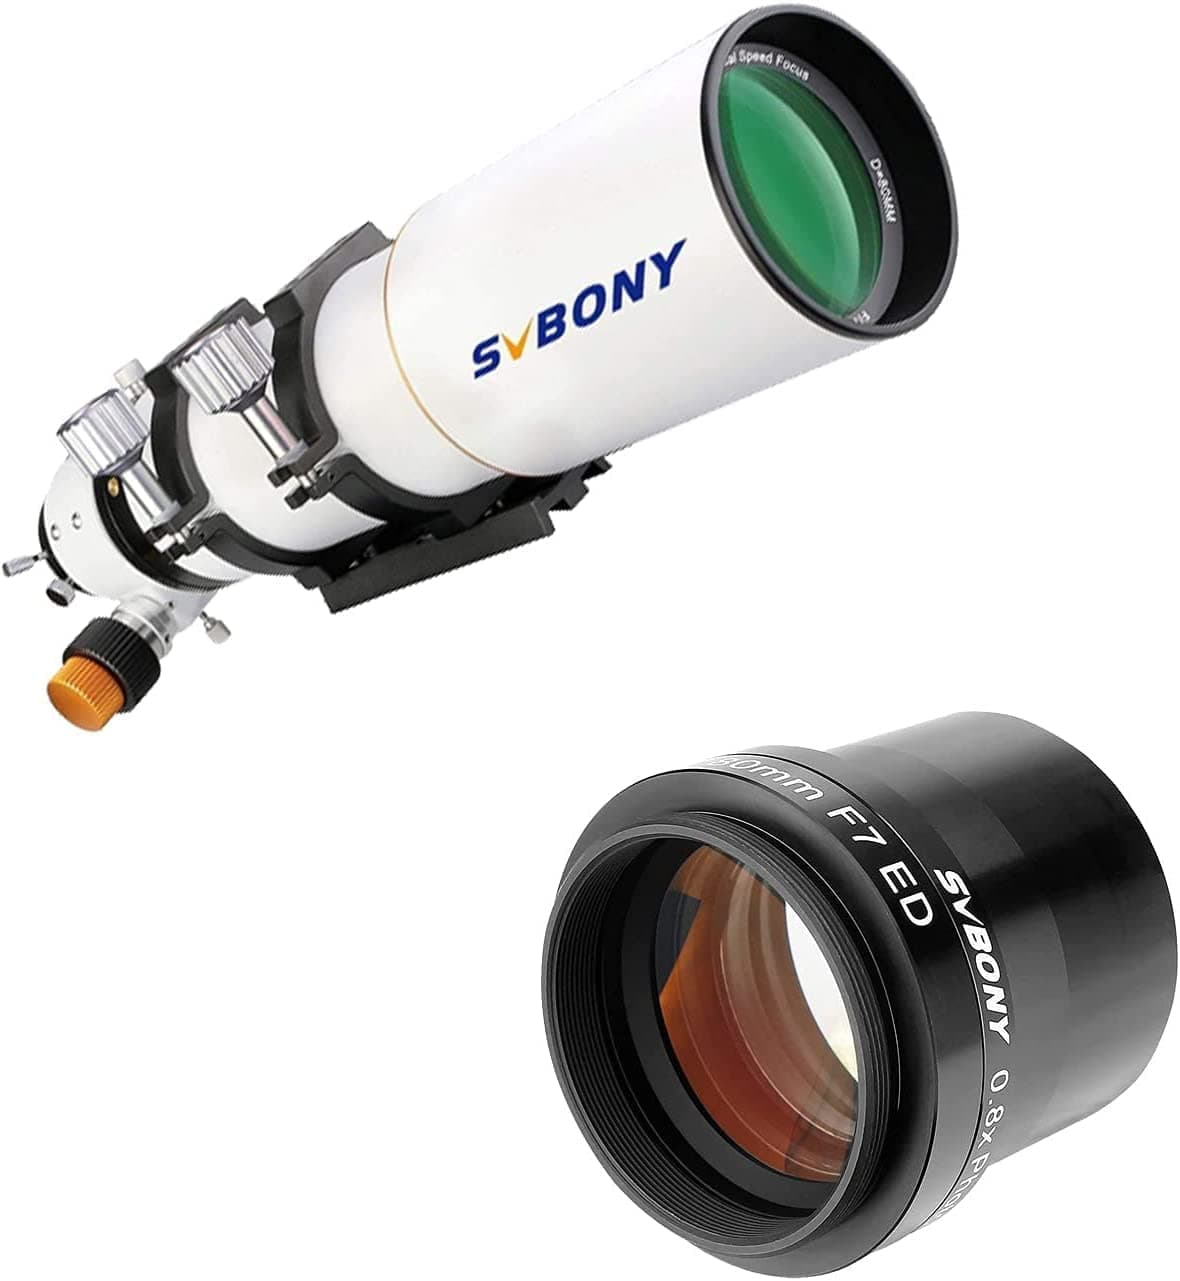 SVBONY SV503屈折鏡筒専用撮影機材セット「フラットナー付き」